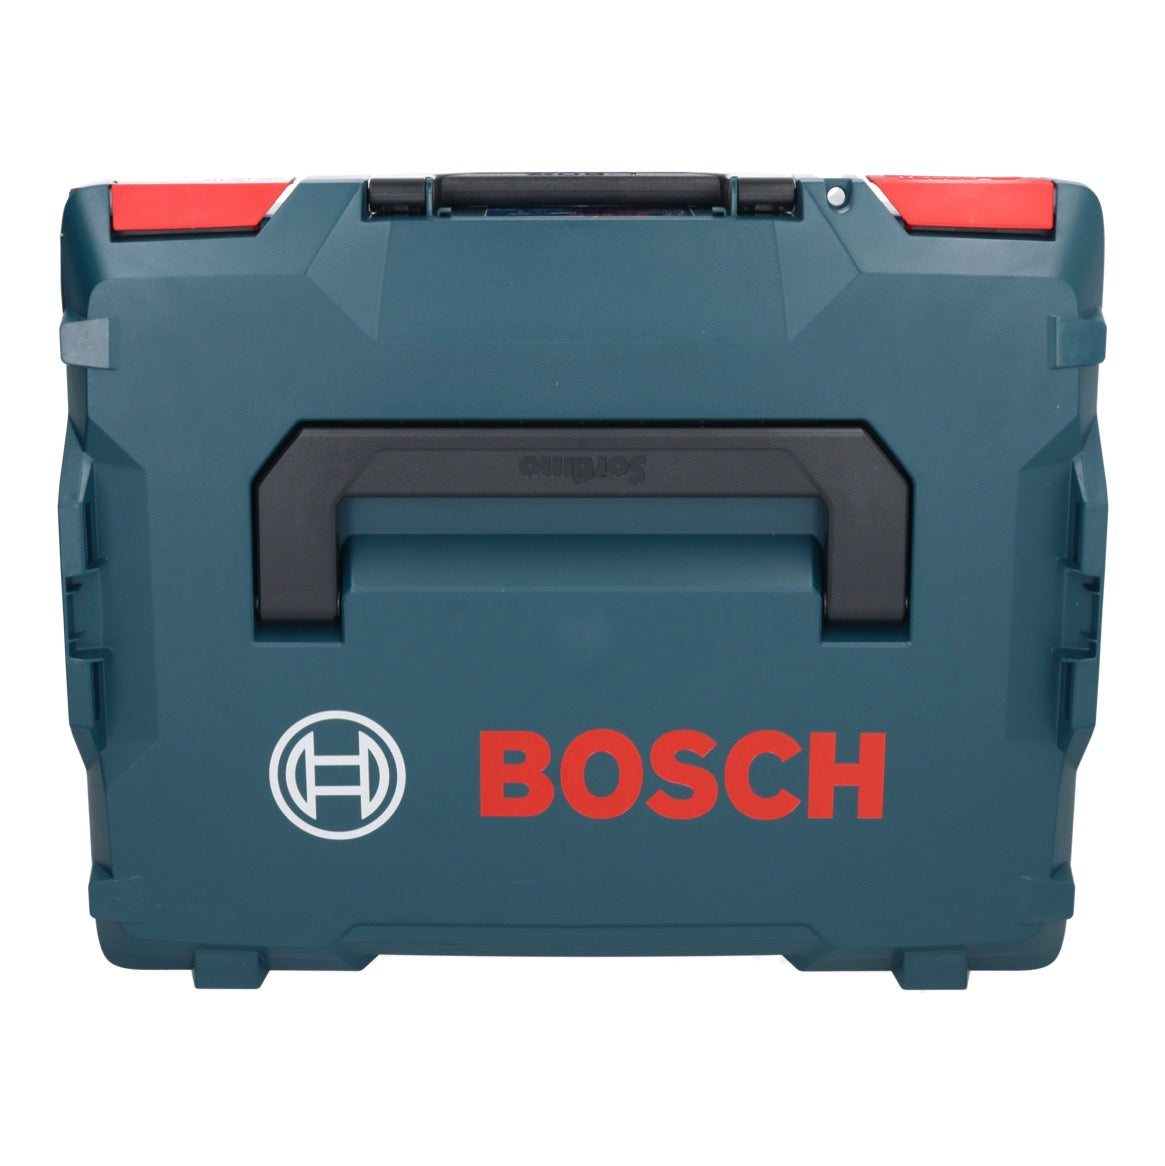 Bosch GDS 12V-115 Professional Akku Drehschlagschrauber 12 V 115 Nm 3/8" Brushless + 1x Akku 3,0 Ah + L-Boxx - ohne Ladegerät